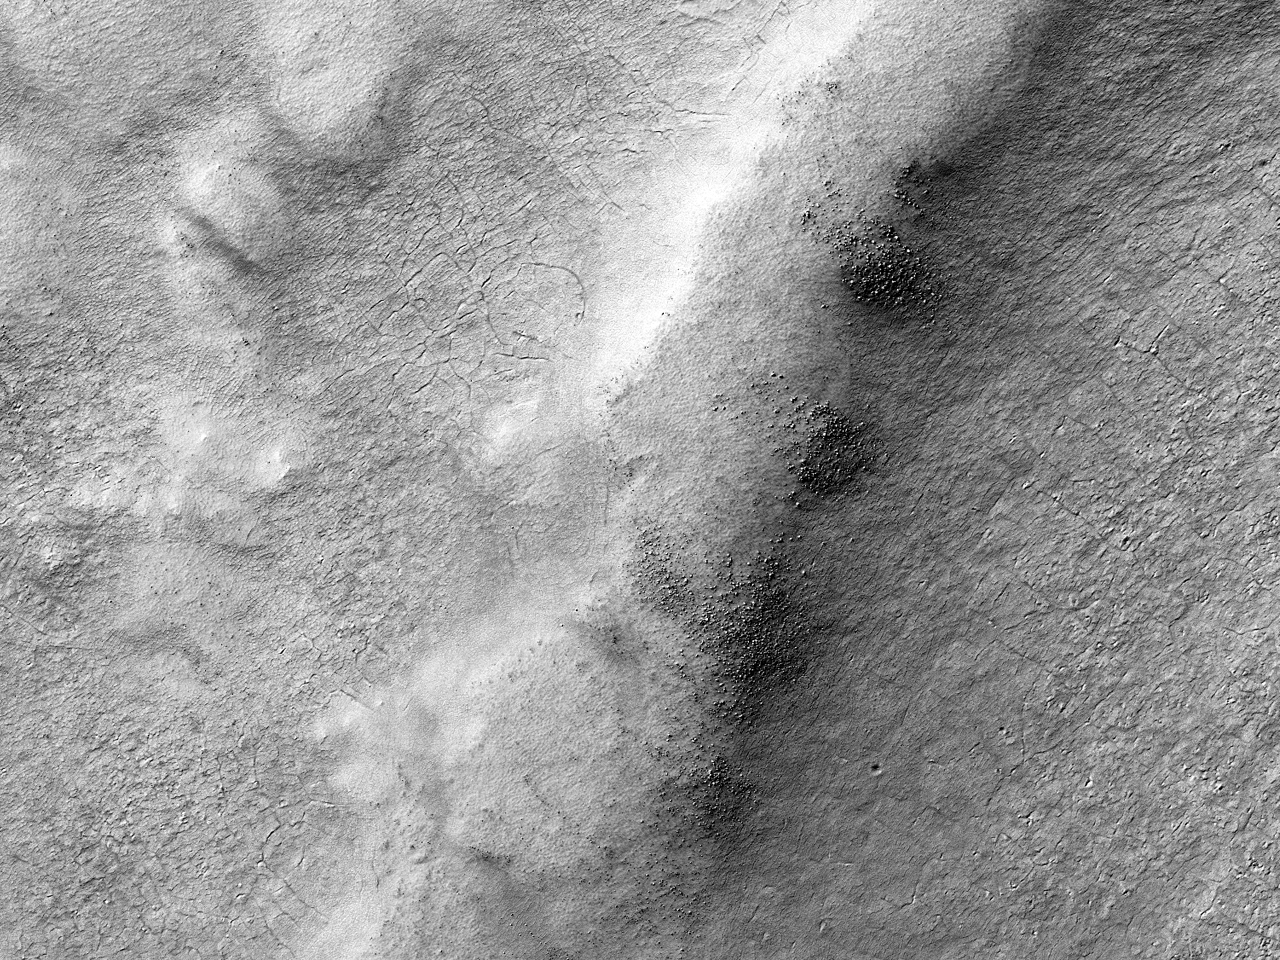 Talajrepedések egy nagy becsapódási kráterben